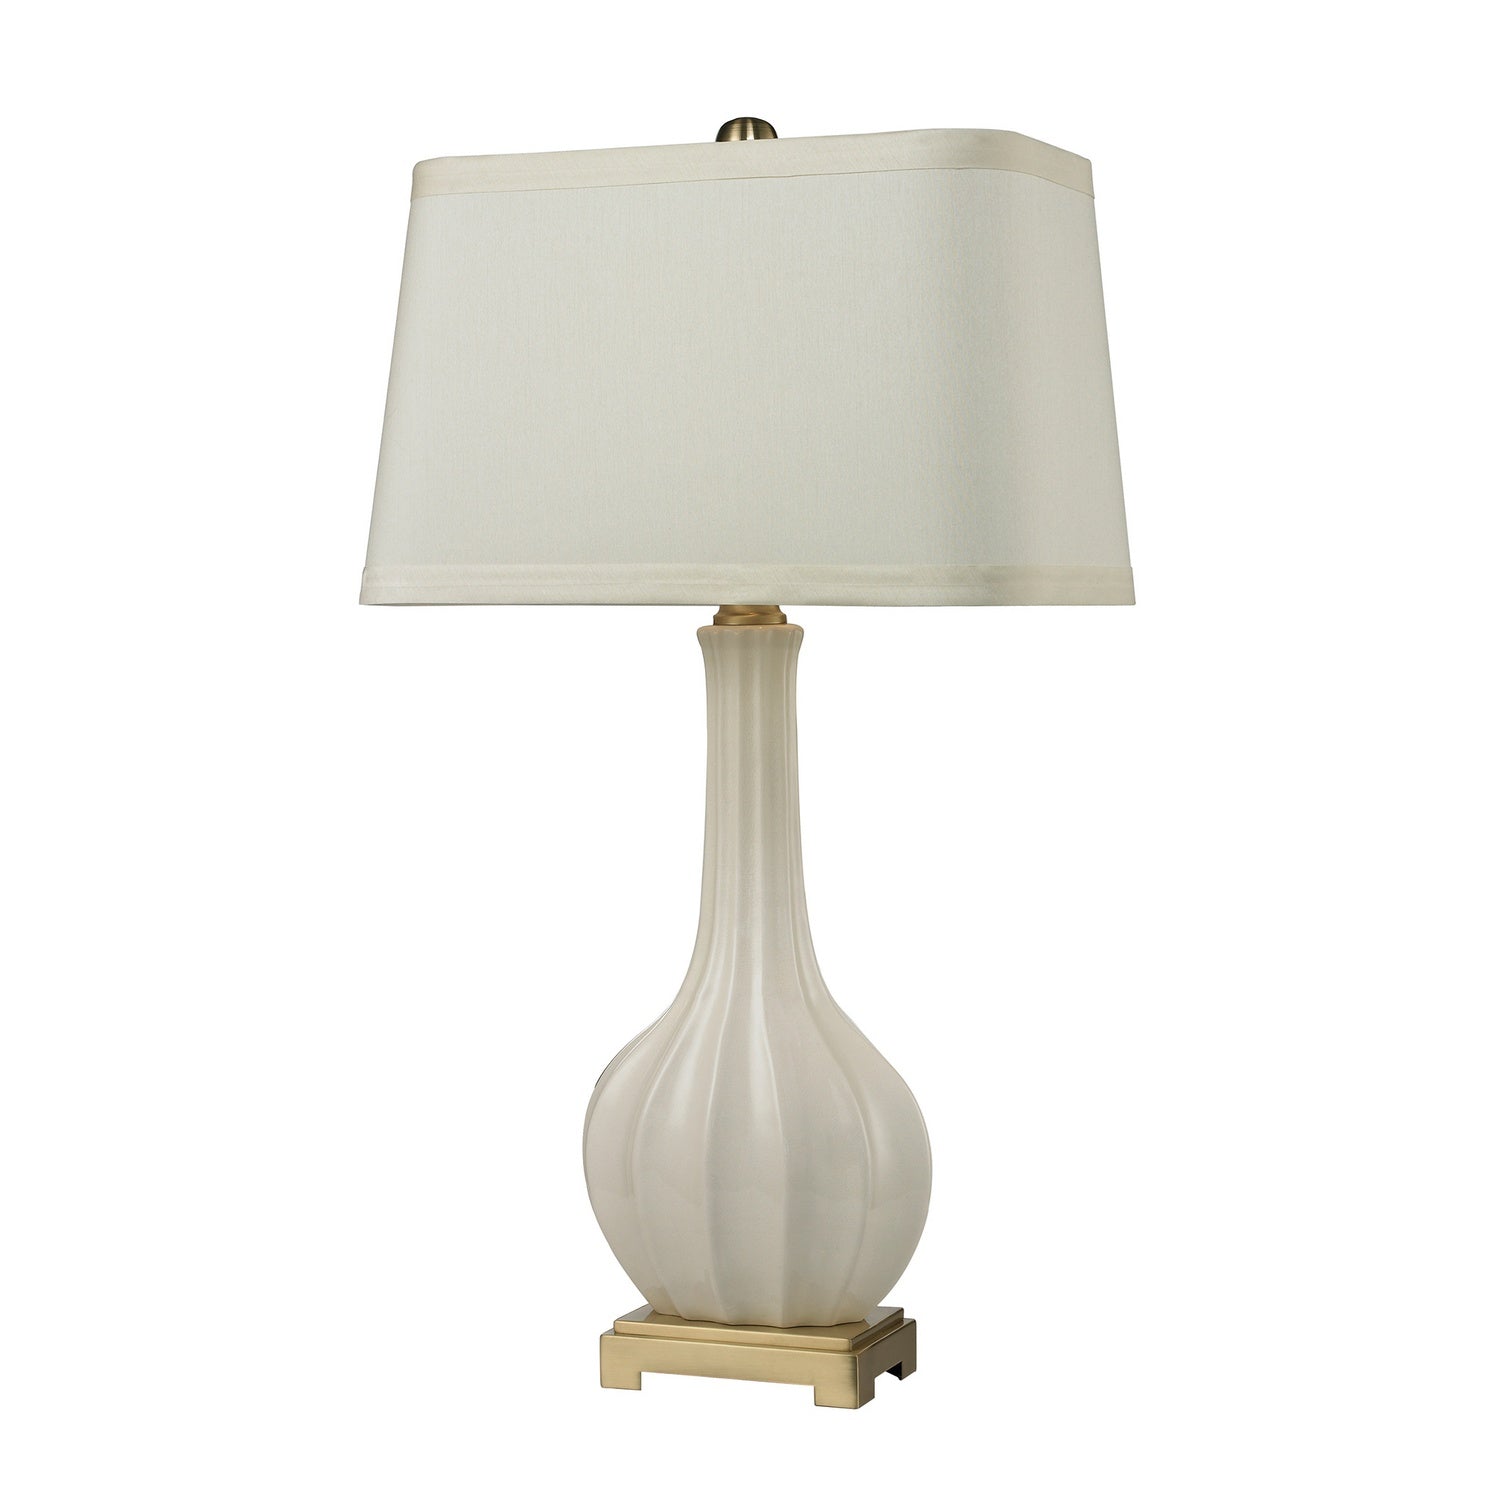 ELK Home - D2596 - One Light Table Lamp - Fluted Ceramic - White